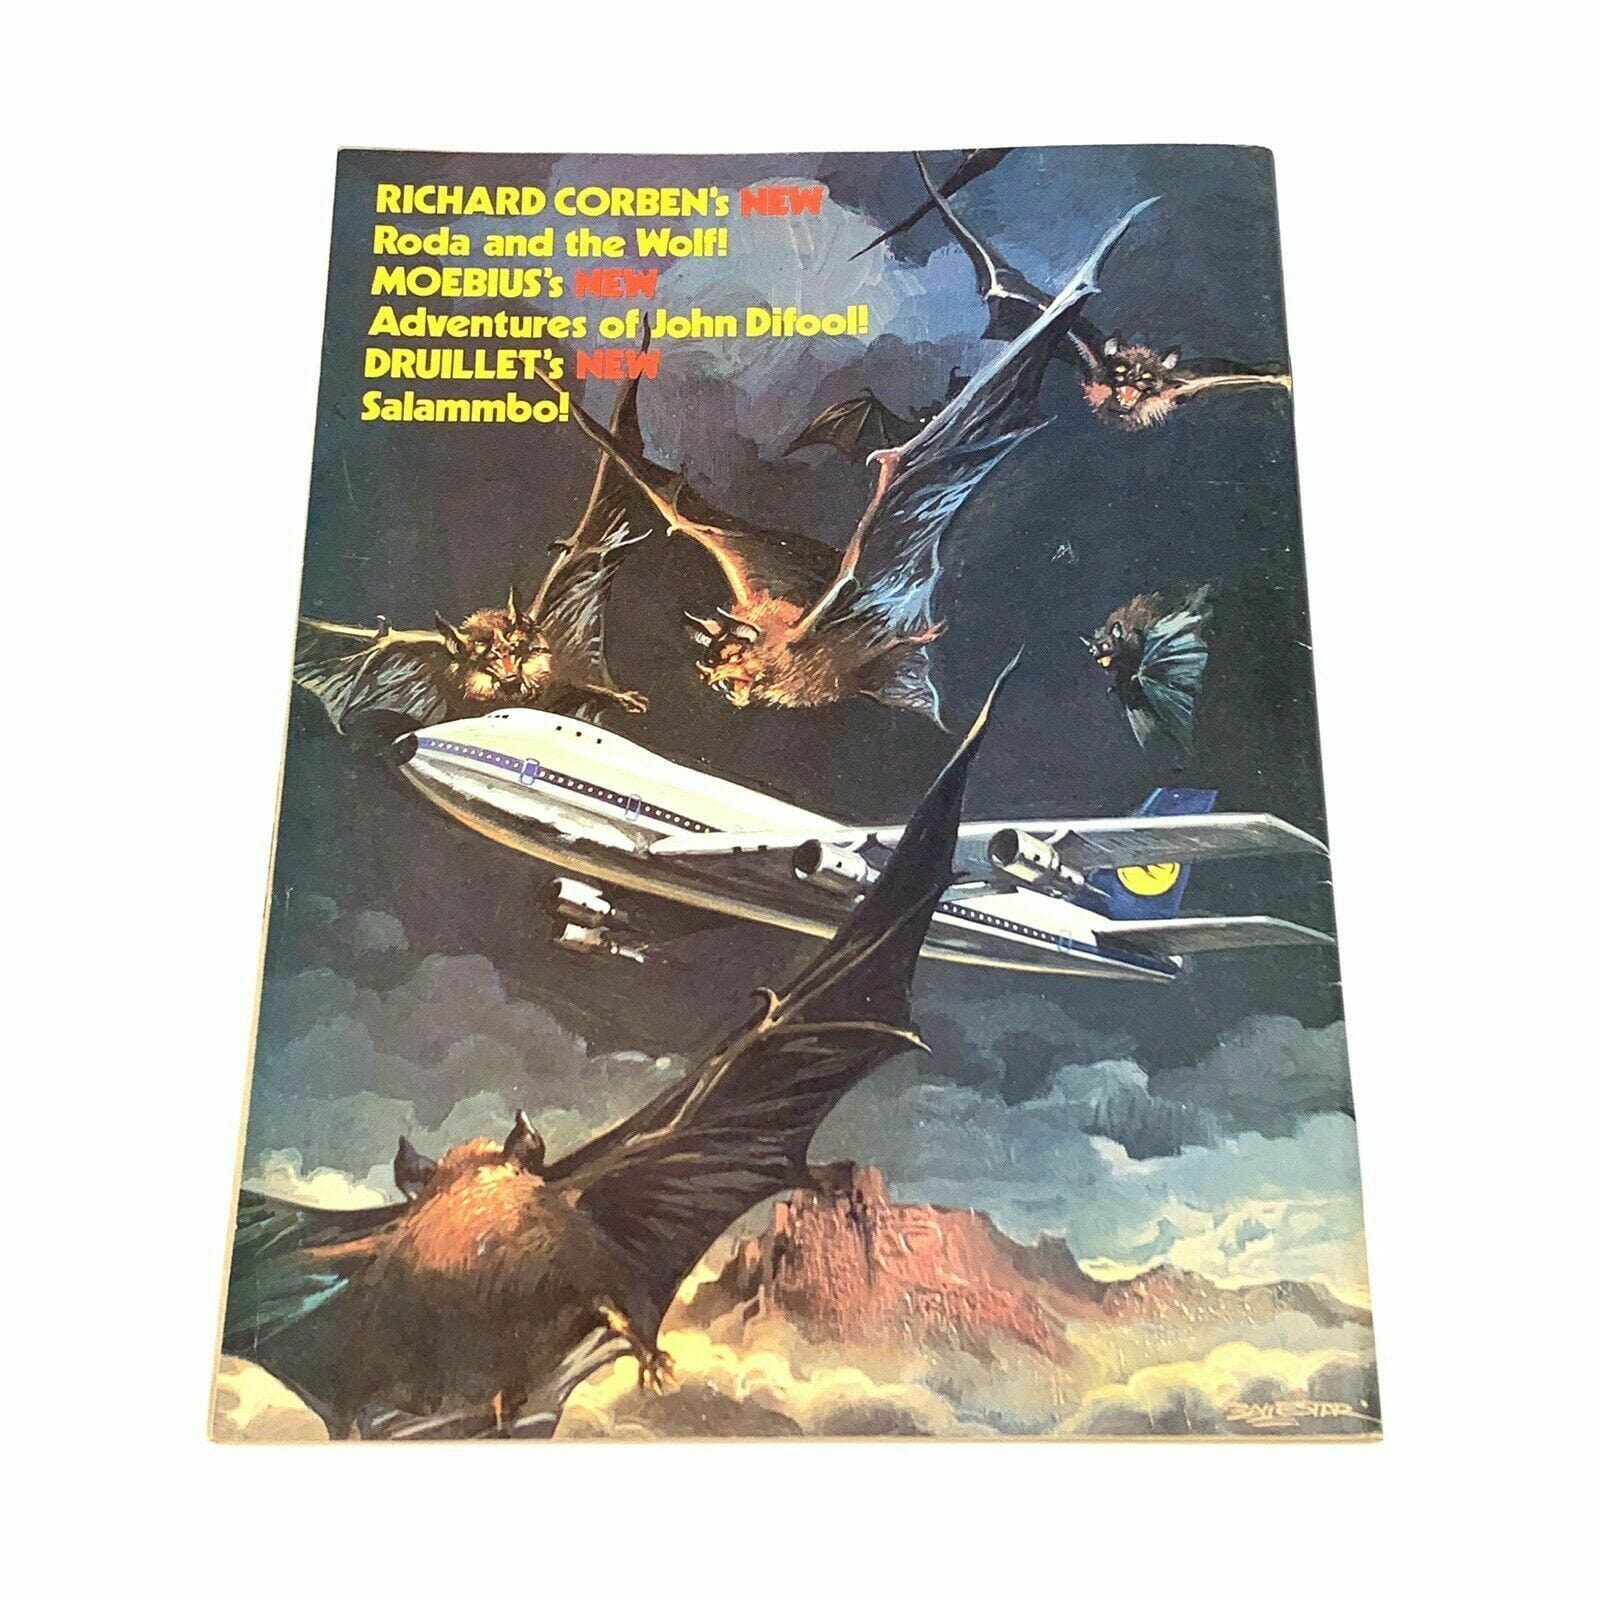 HEAVY METAL - Adult Illustrative Fantasy Magazine - February 1984 - parsimonyshoppes